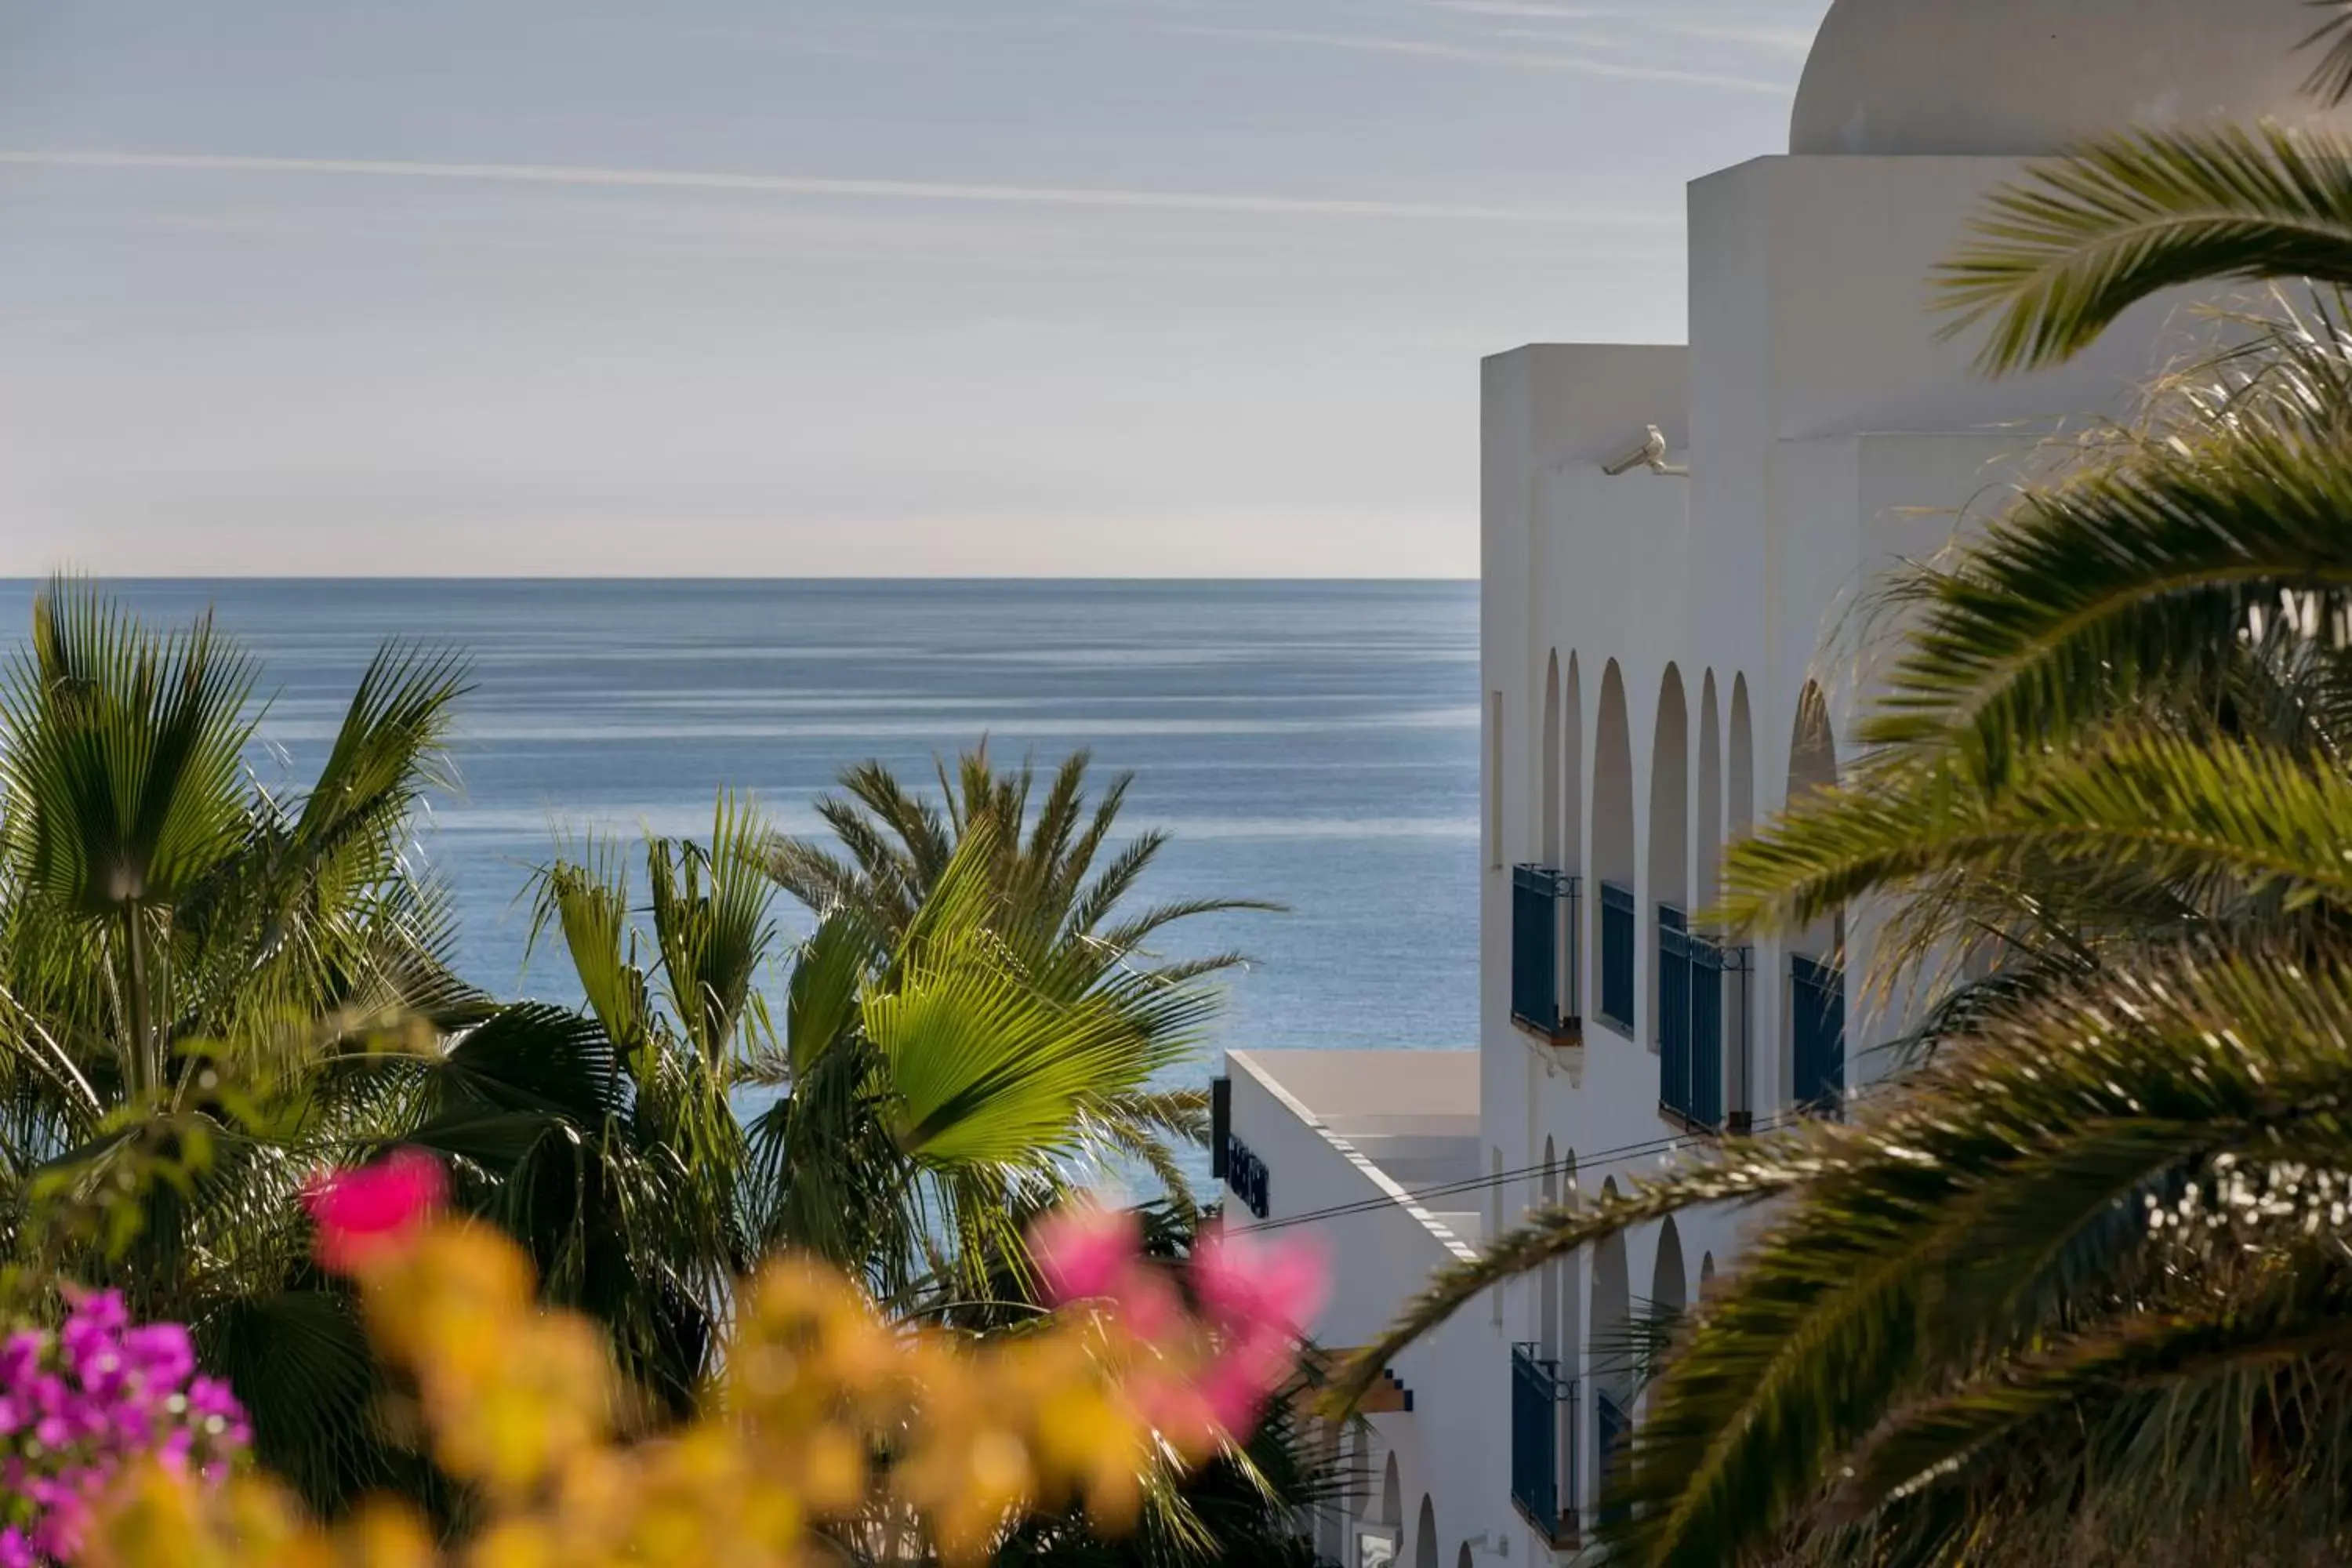 Sea View in Hotel Puntazo II